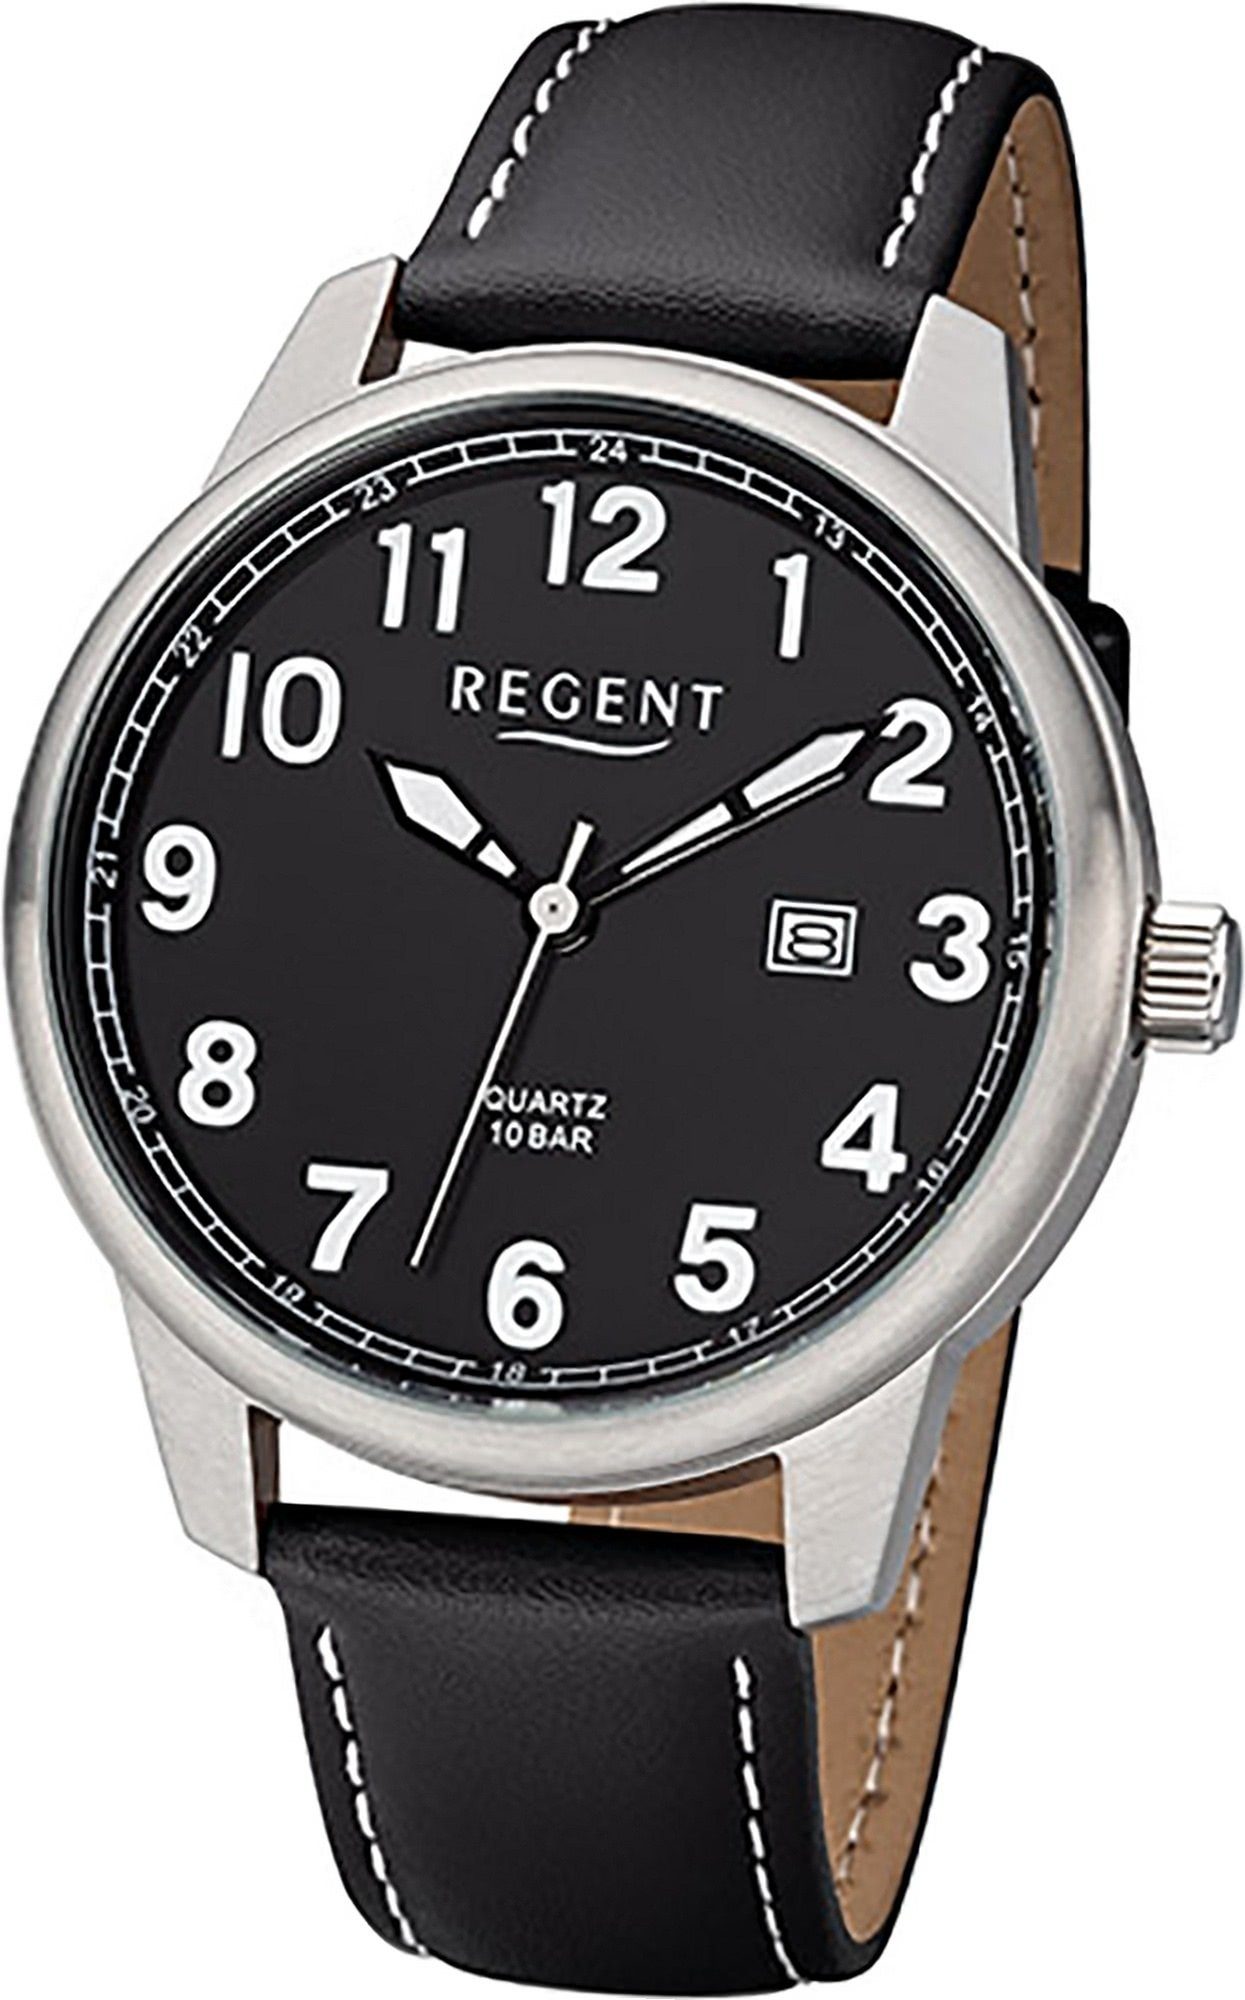 schwarz, Regent Herren Analog, Uhr Quarzuhr Gehäuse, Herrenuhr F-1238 41mm) (ca. groß Regent Lederarmband Leder rundes